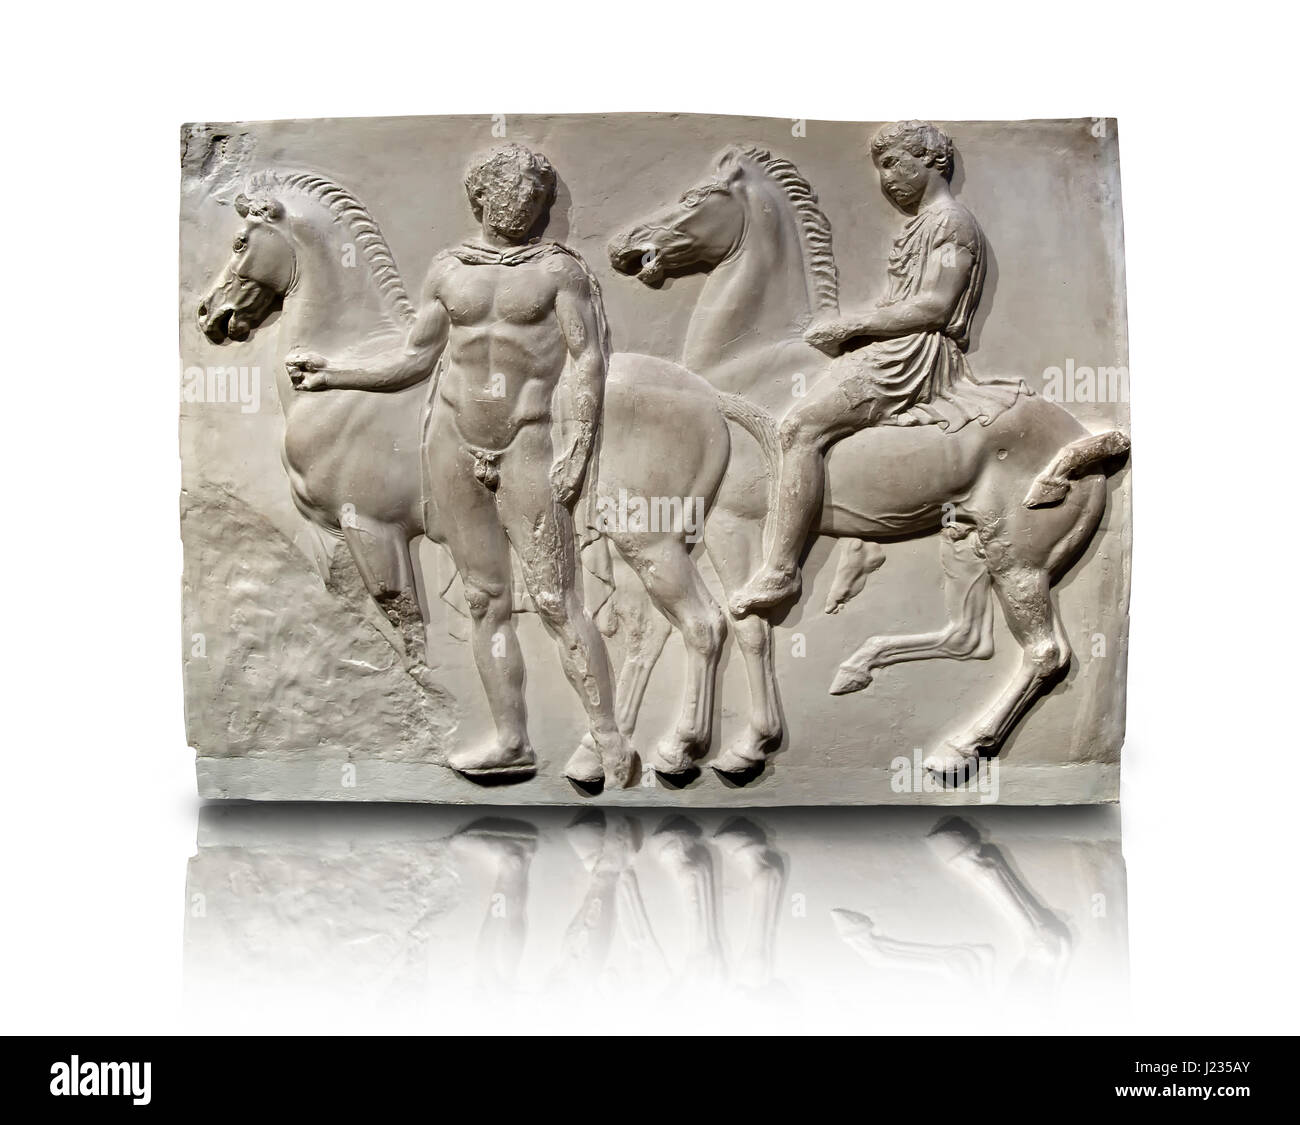 Releif Sculptures de la frise autour du Parthénon Block V. du Parthénon de l'acropole d'Athènes. Une exposition du Musée britannique connue sous le nom de Elgi Banque D'Images